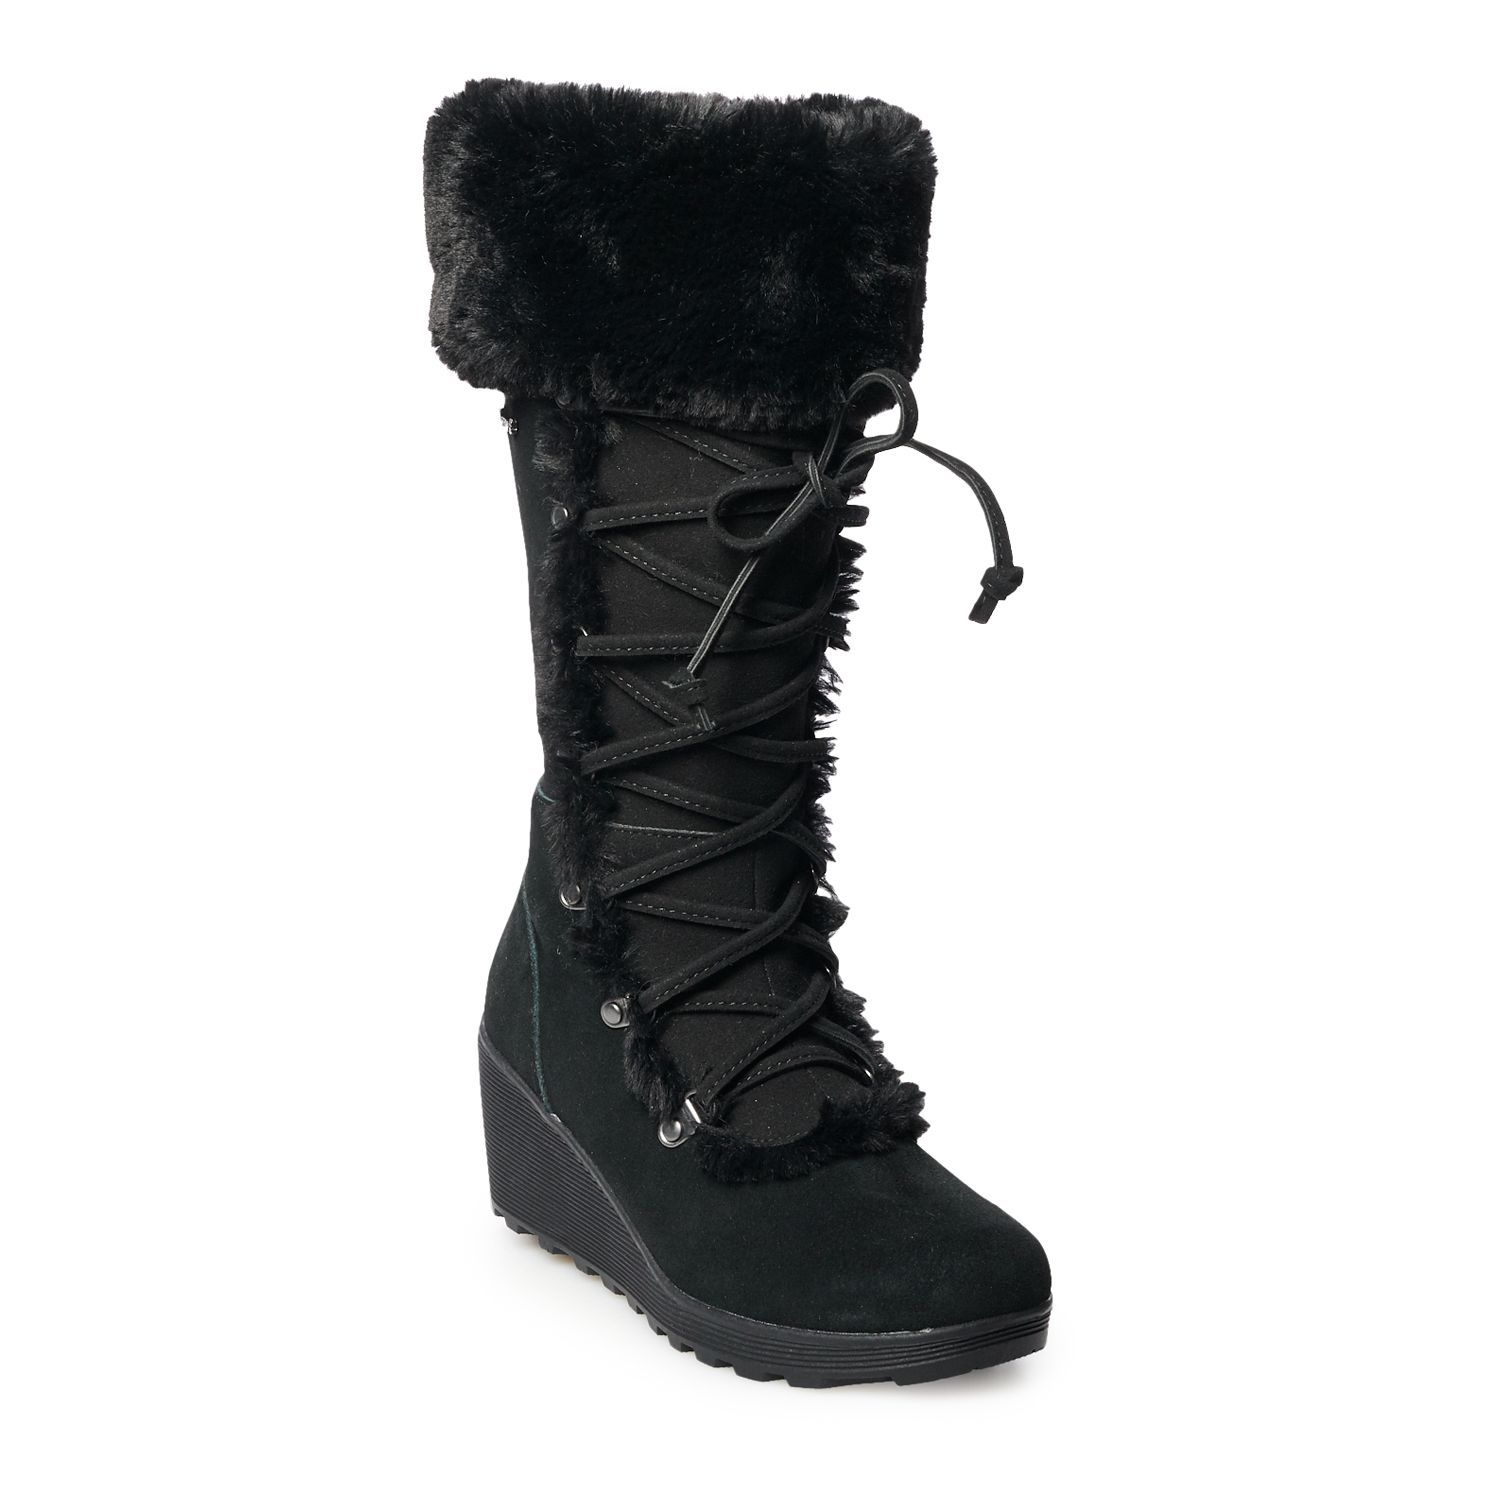 bearpaw women's winter boots